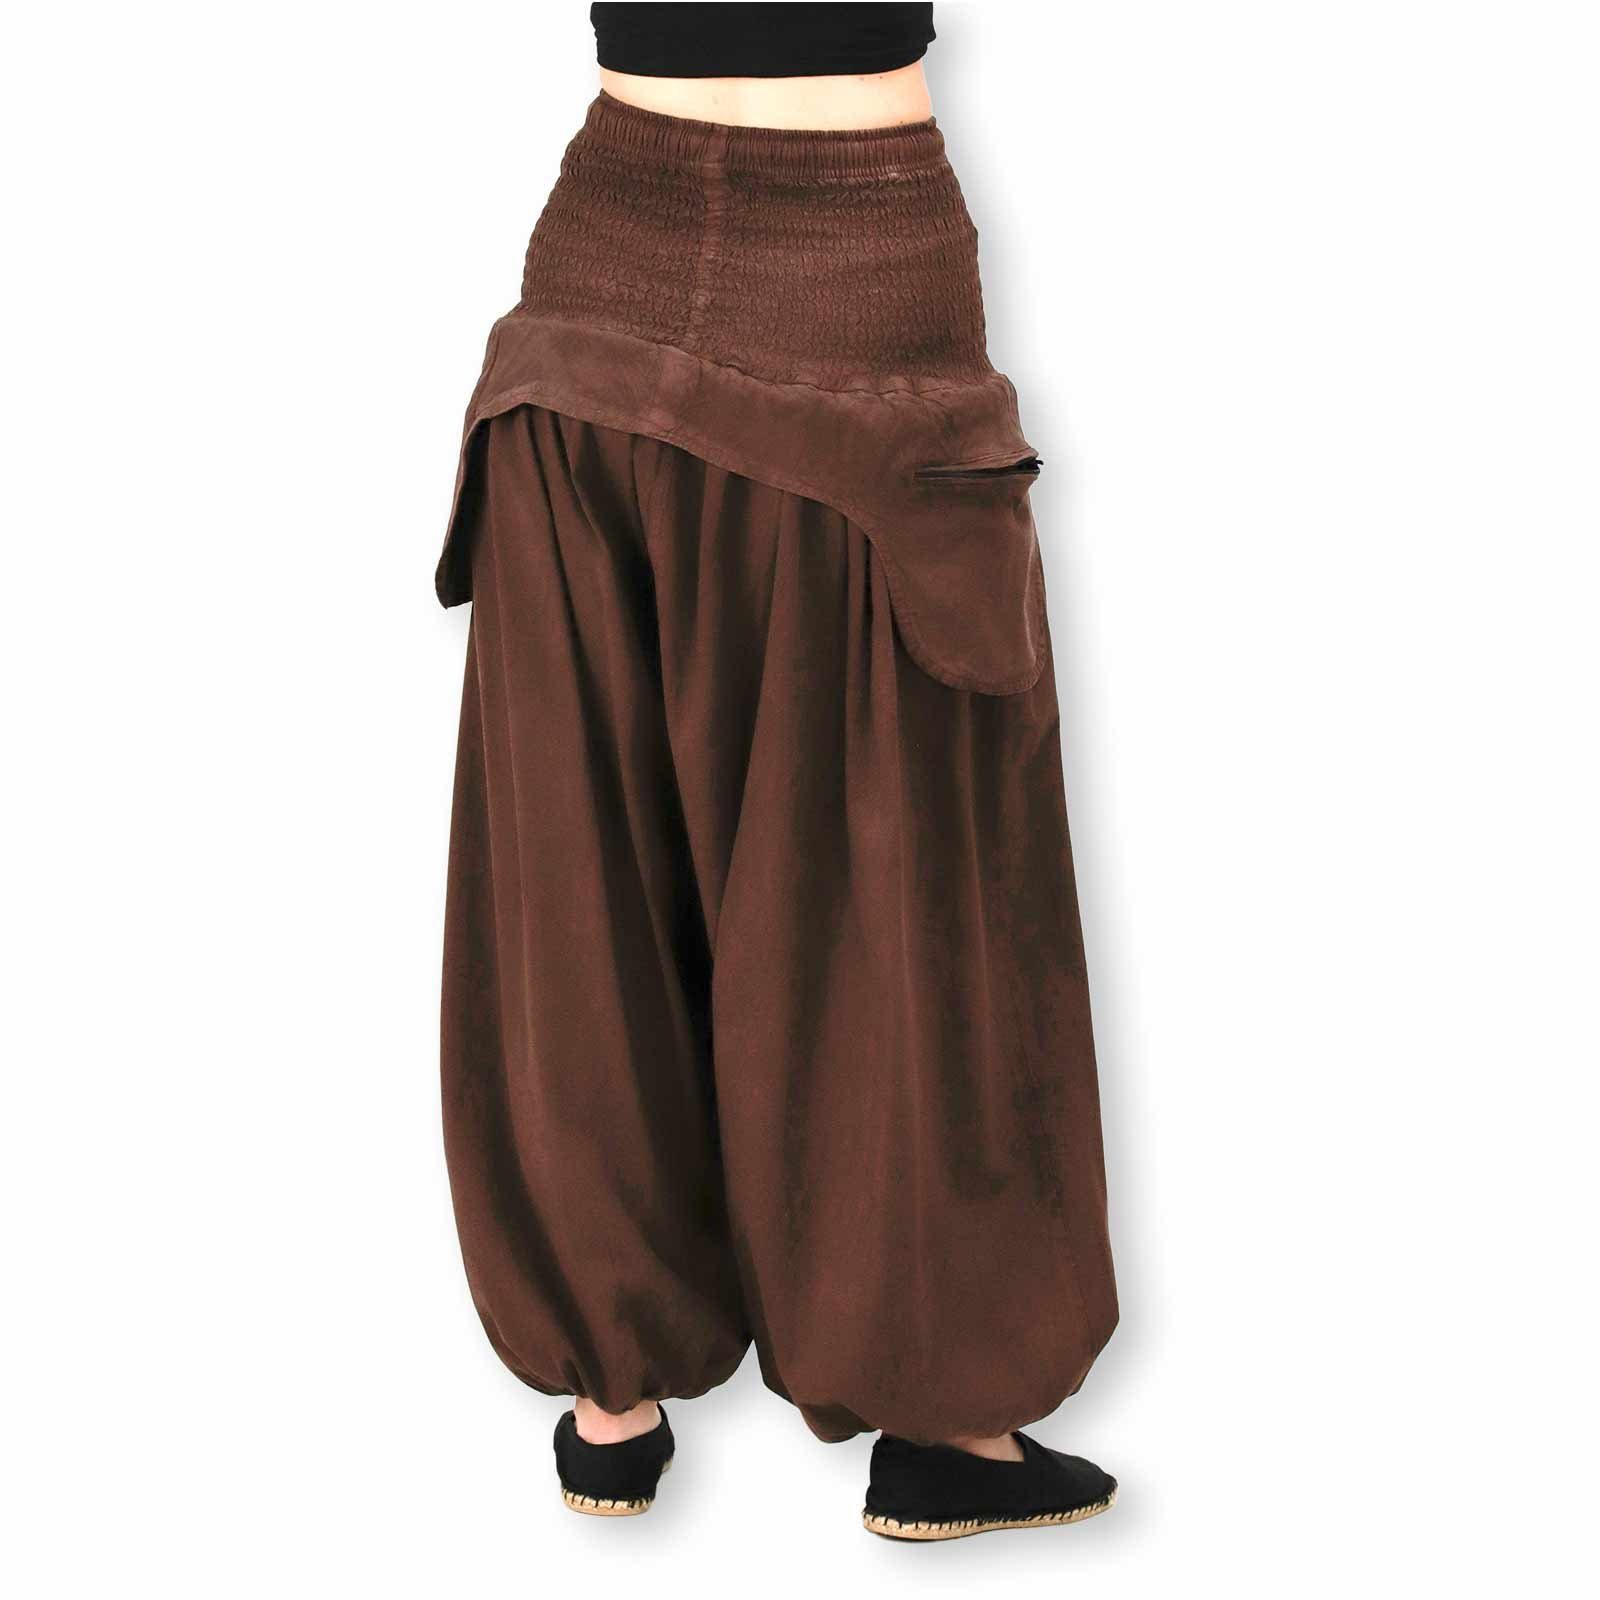 Unifarben praktische Hose Vintage KUNST Damen Schürzentaschen Braun UND MAGIE Haremshose Haremshose/Jodhpur-Hose